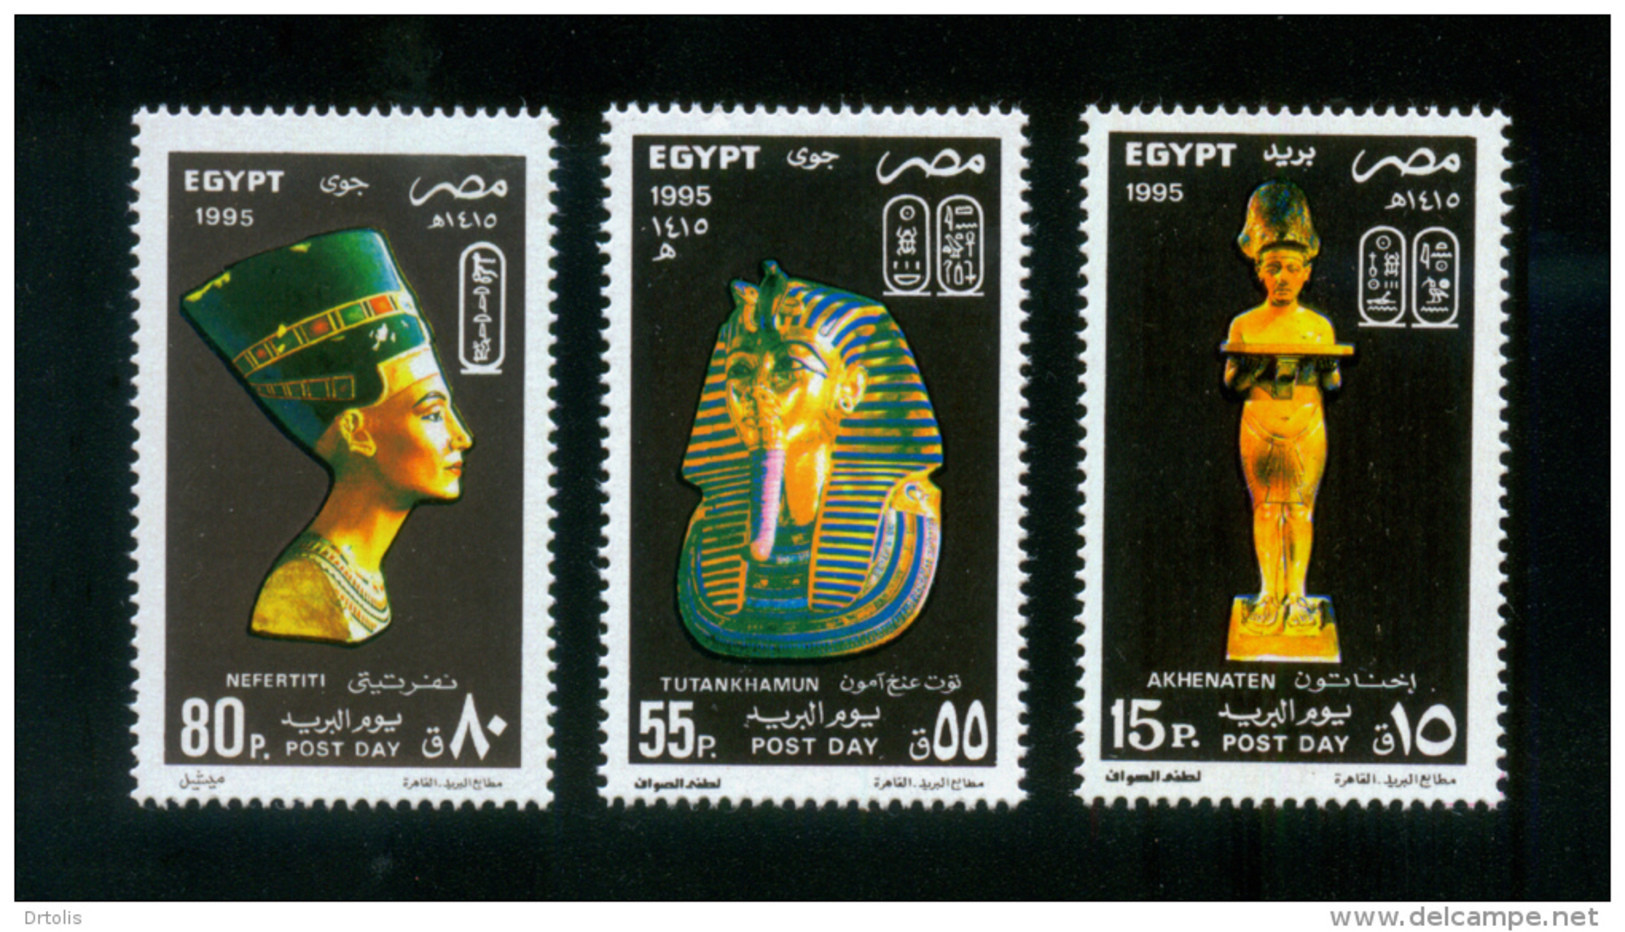 EGYPT / 1995 / POST DAY / THE 18TH DYNASTY OF THE PHARAOHS / AKHENATEN / TUTANKHAMUN / NEFERTITI / MNH / VF - Neufs